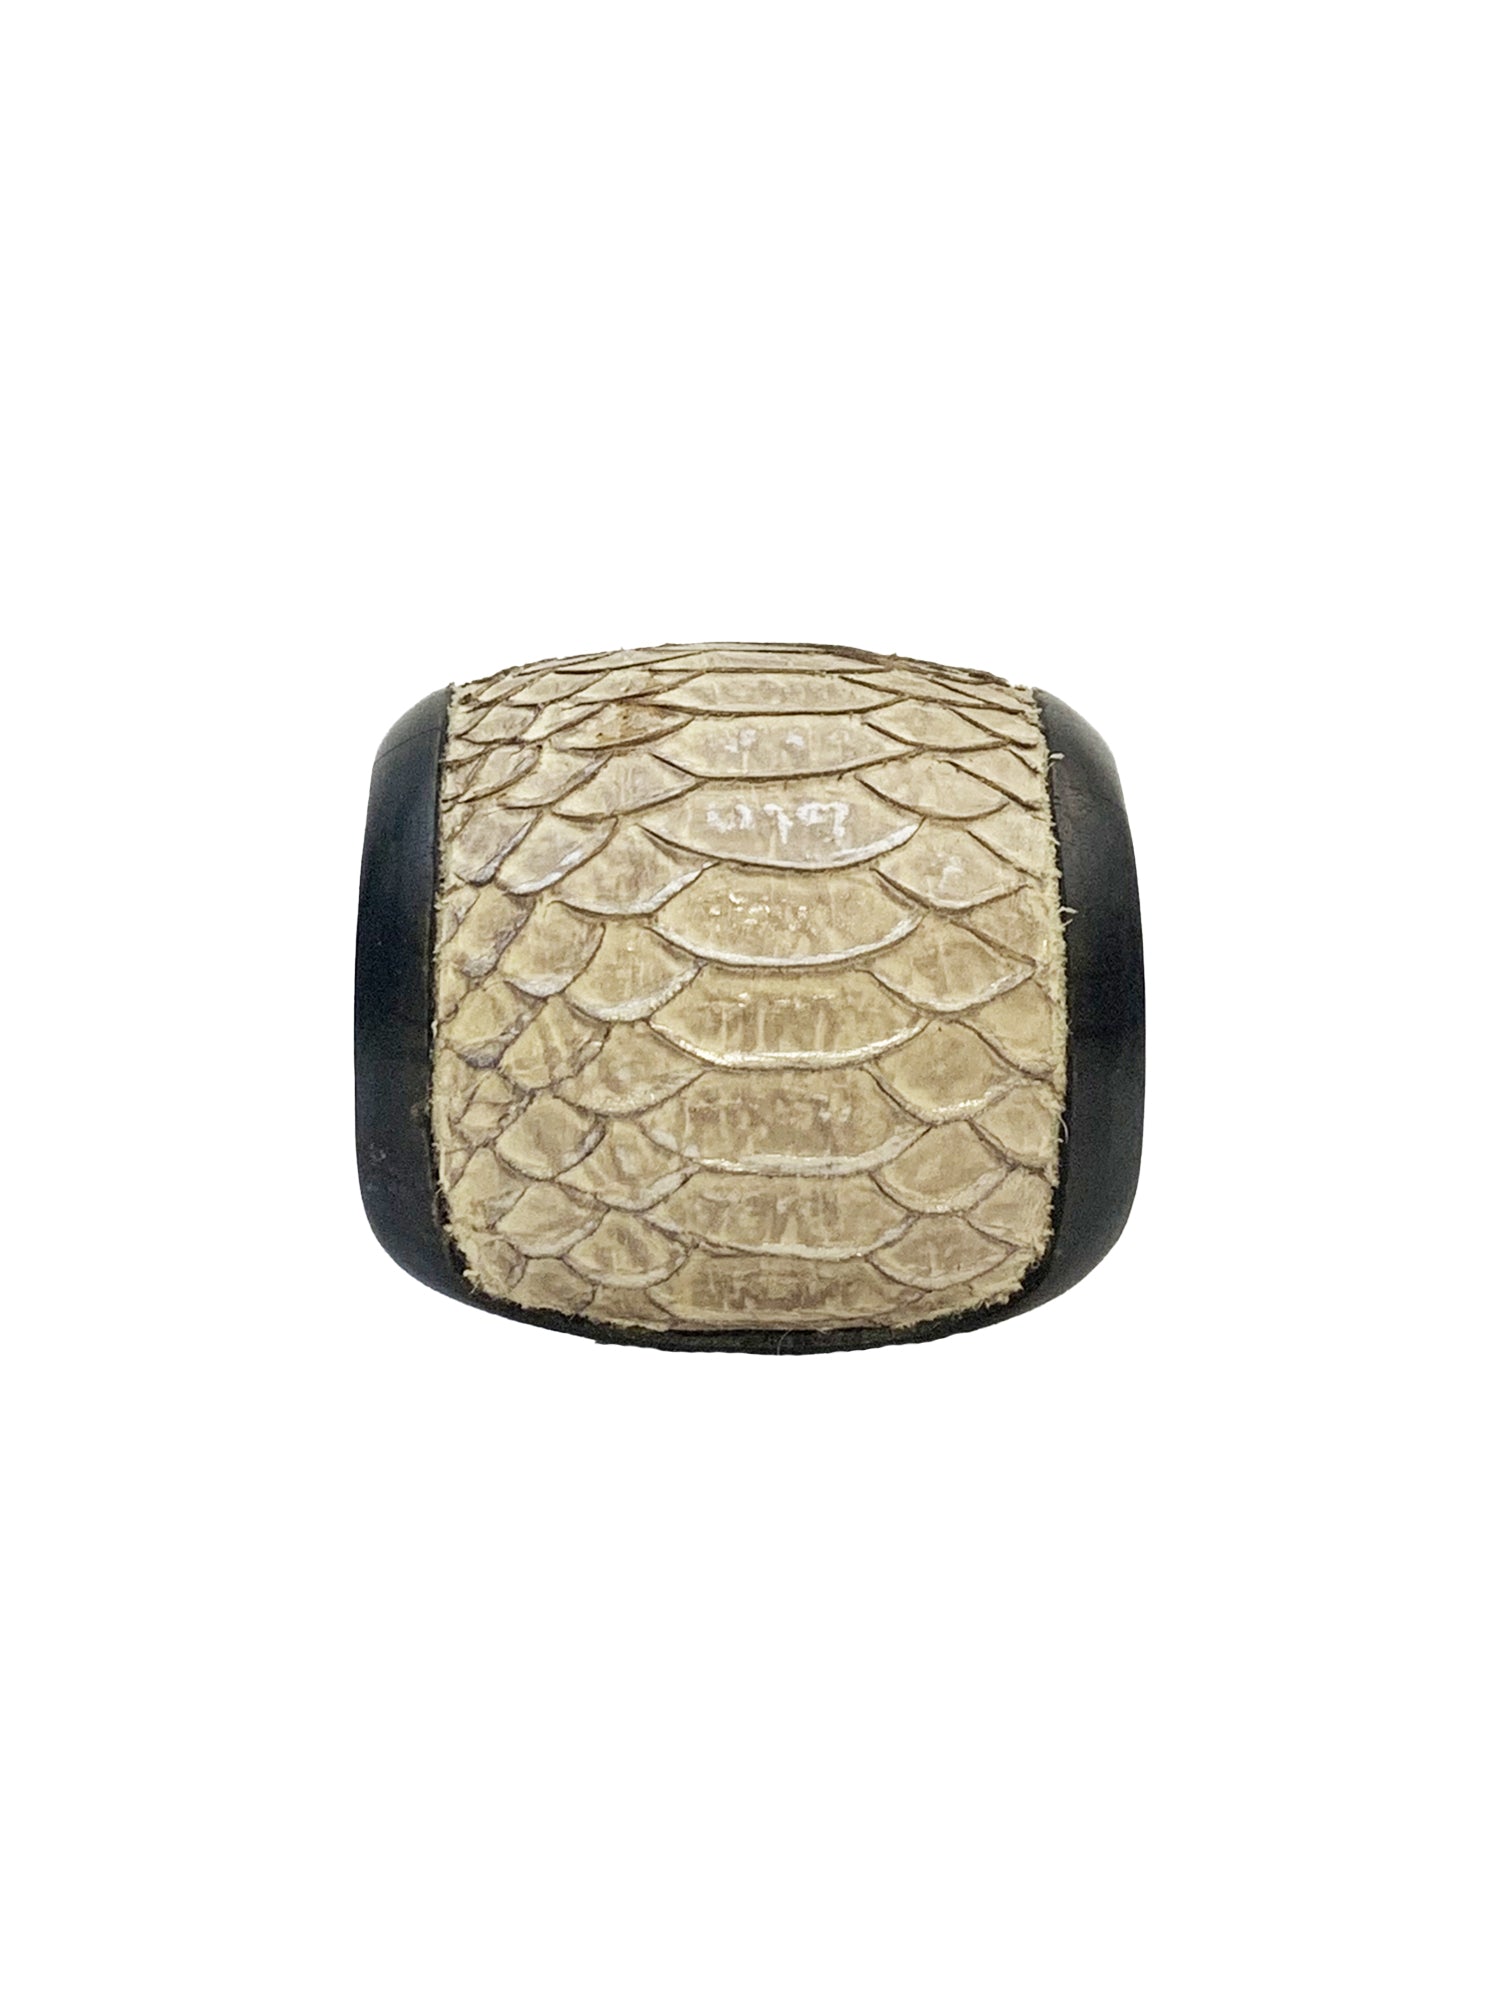 Leather & Wood Cuff Bracelet - Beige